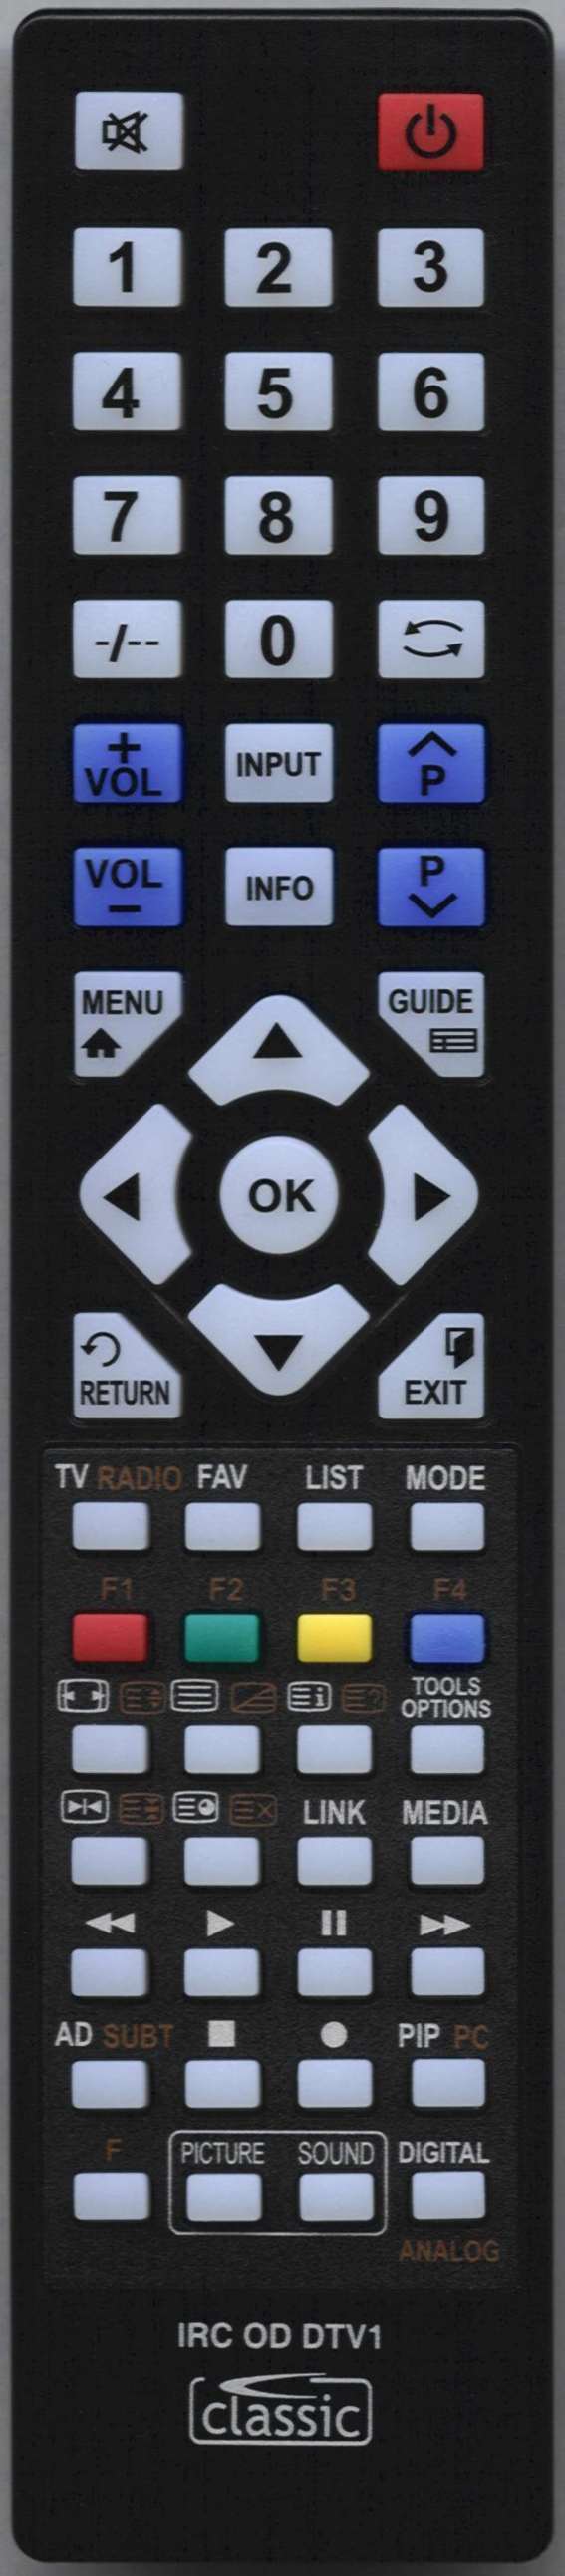 UMC Q19/04-TC-UK Remote Control